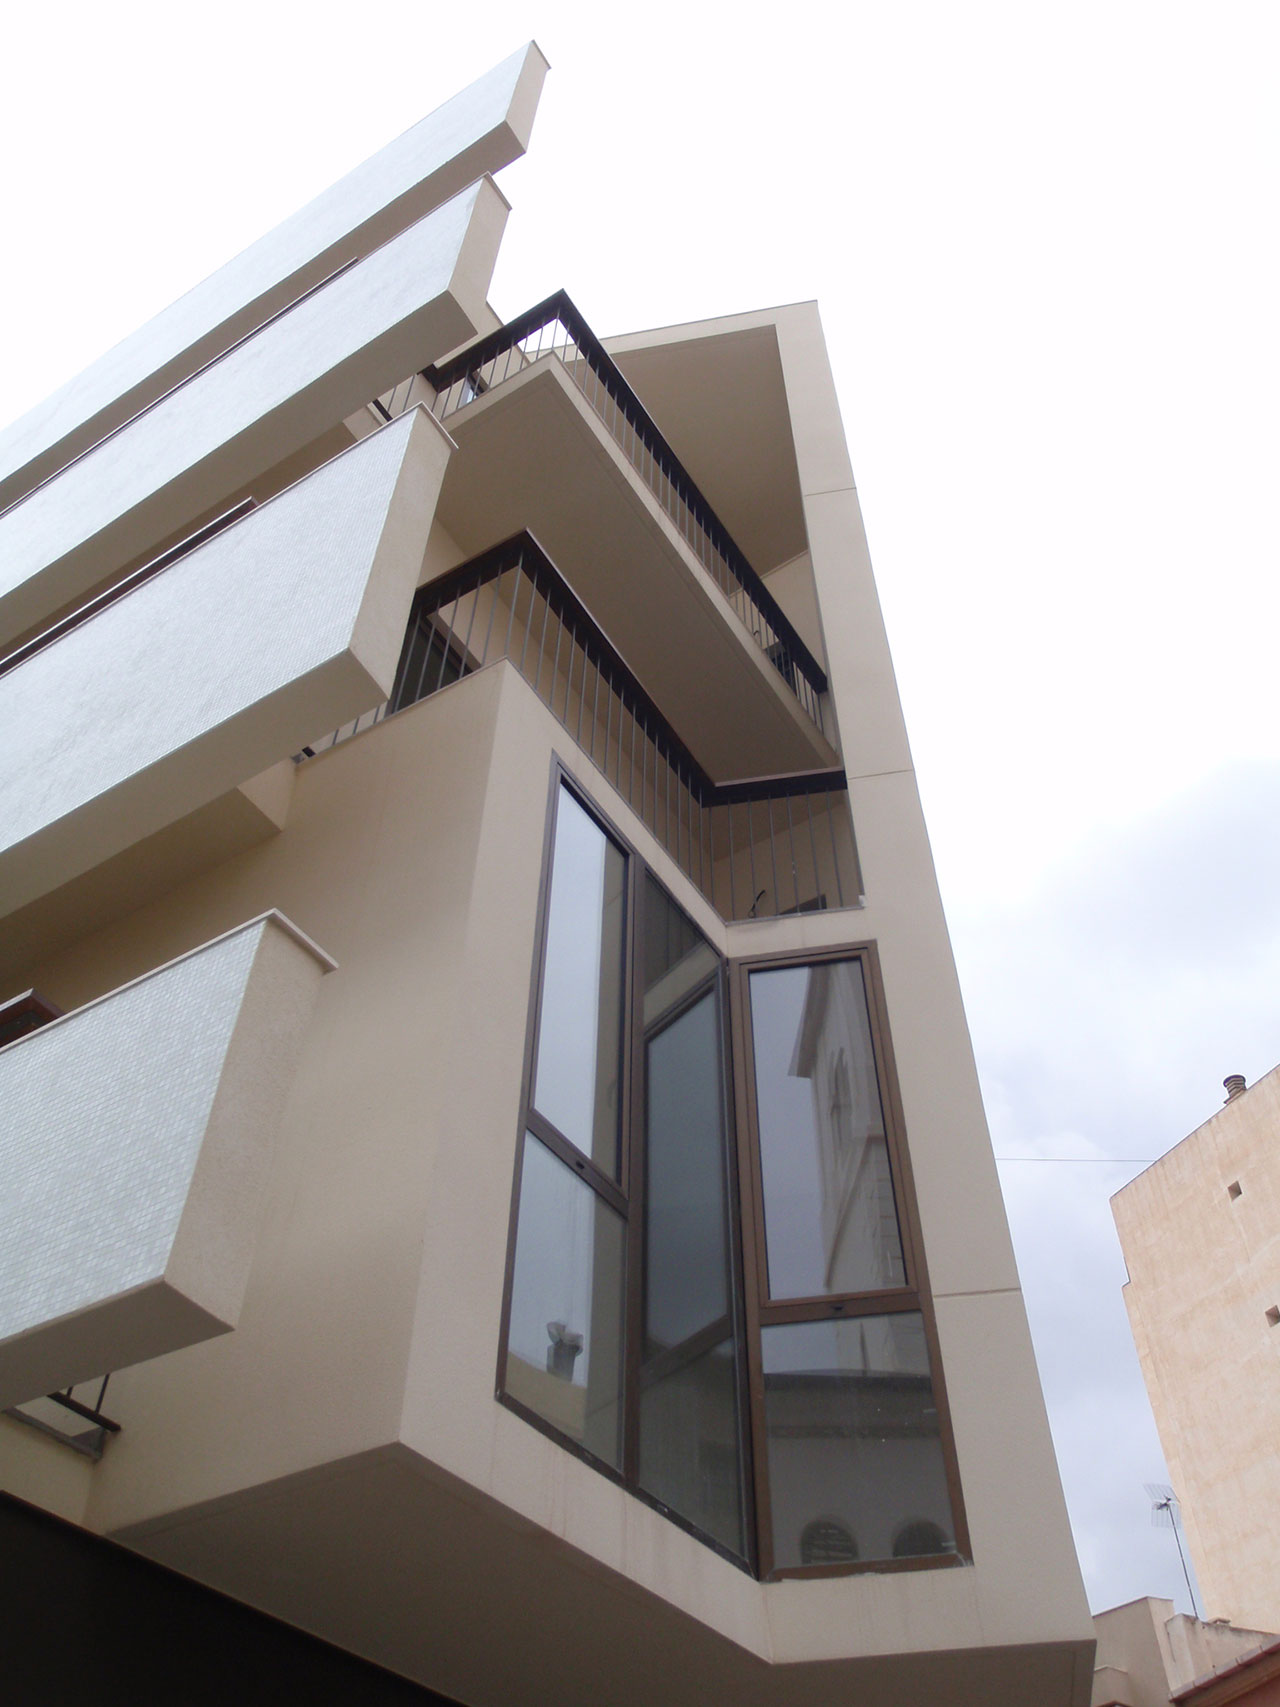 Proyecto de construcción de edificio viviendas con fachadas a dos orientaciones